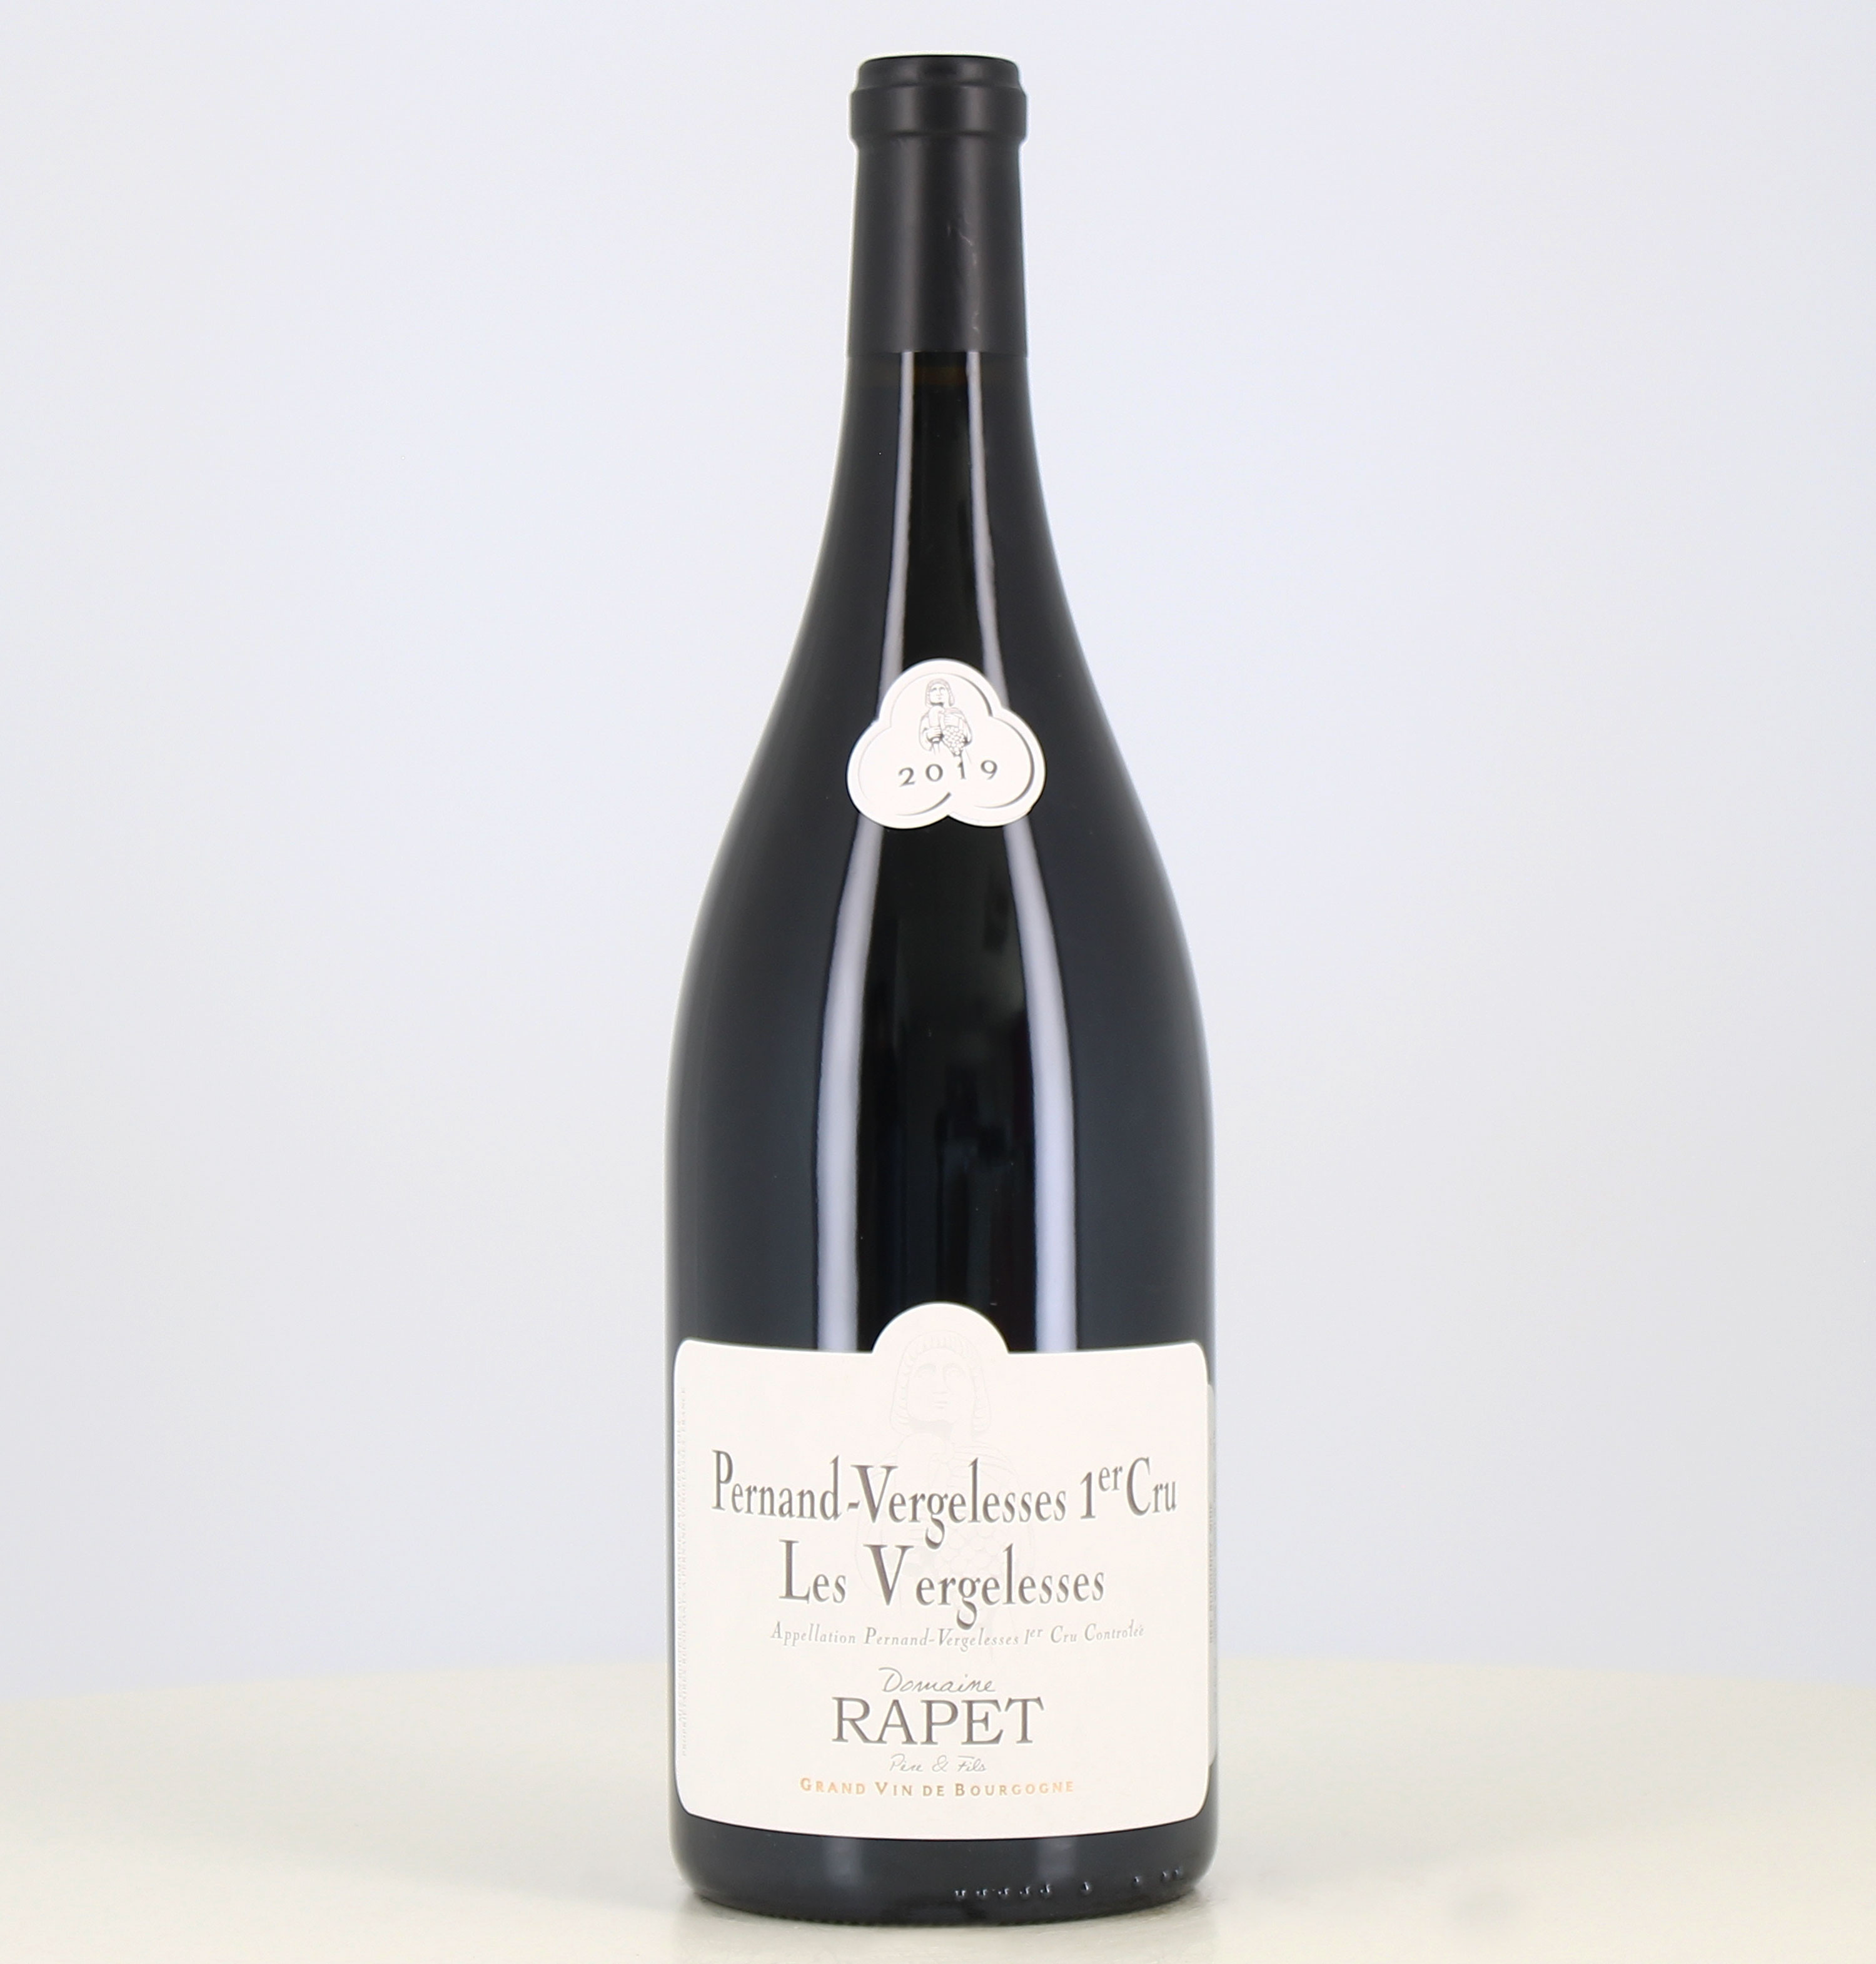 Magnum vin rouge Pernand Vergelesses 1er cru Les Vergelesses domaine Rapet 2019 